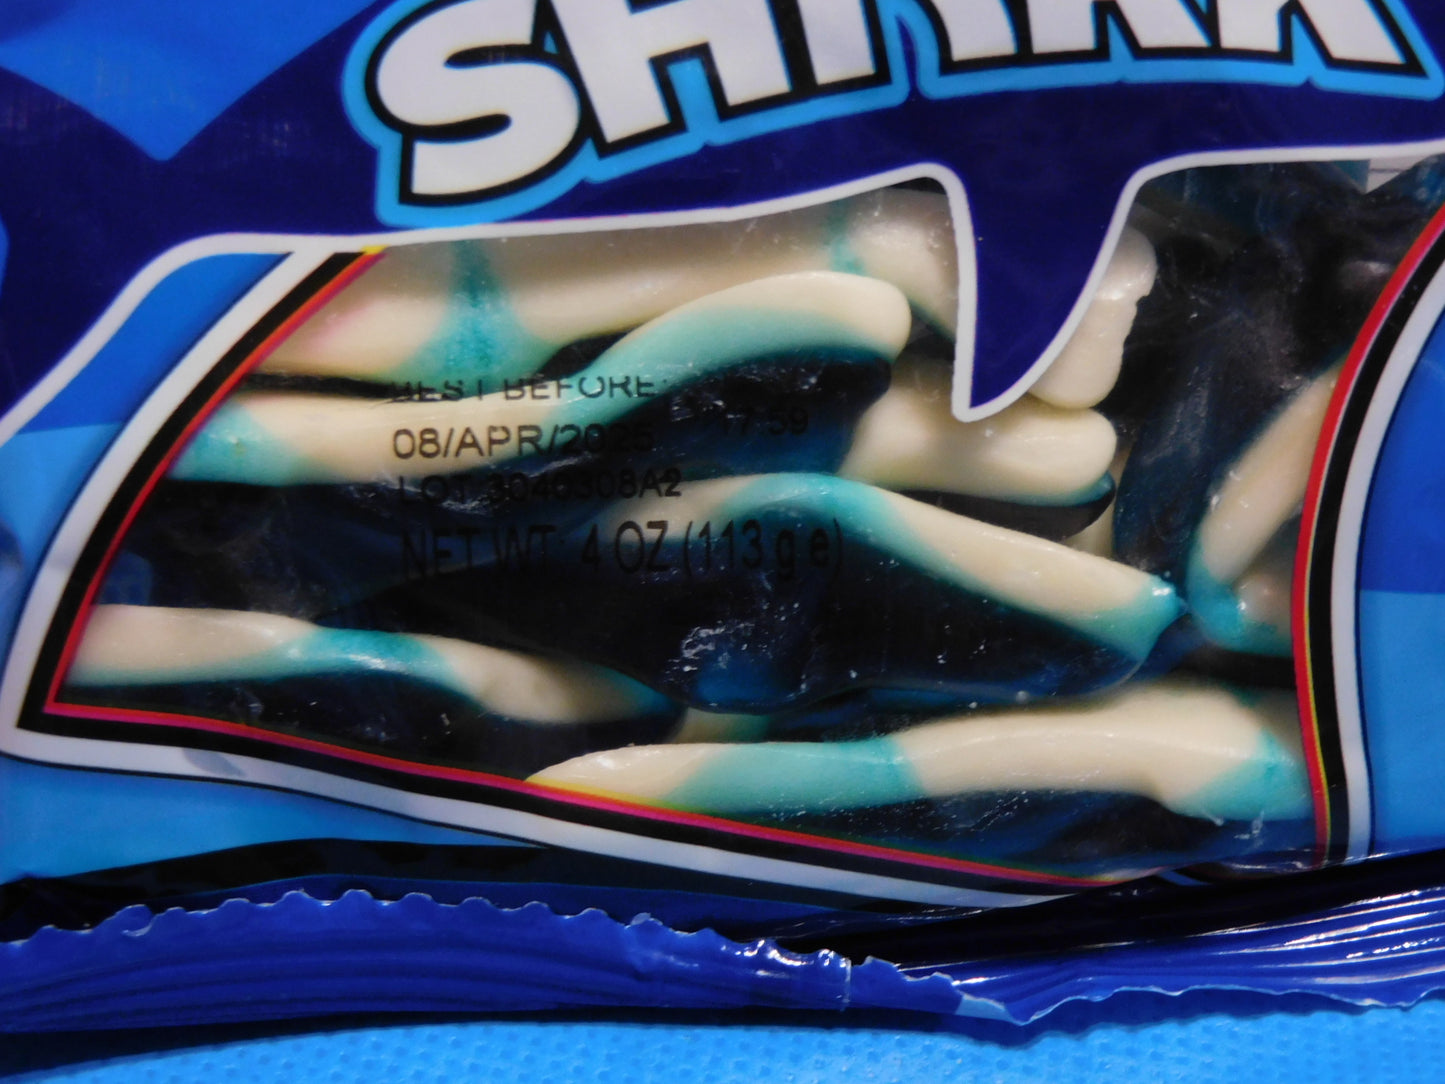 Candy - Blue Shark Gummies